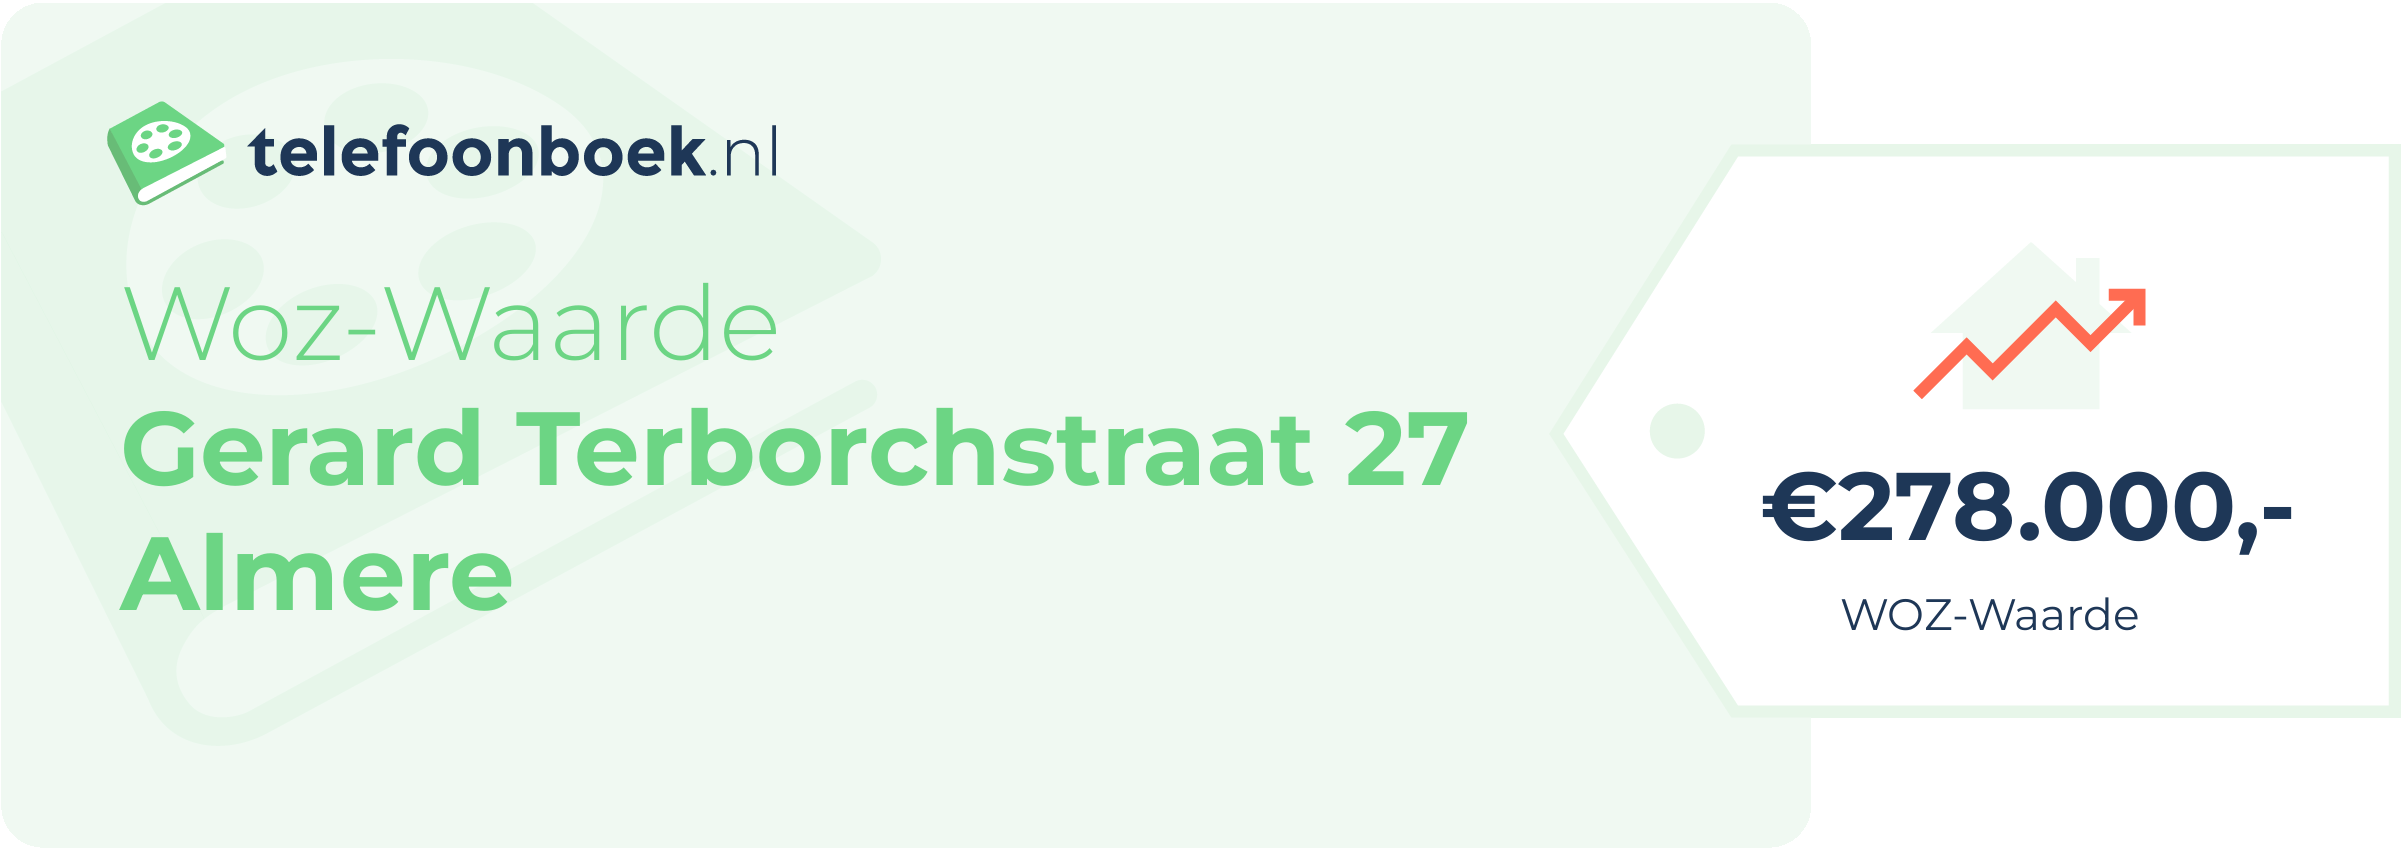 WOZ-waarde Gerard Terborchstraat 27 Almere